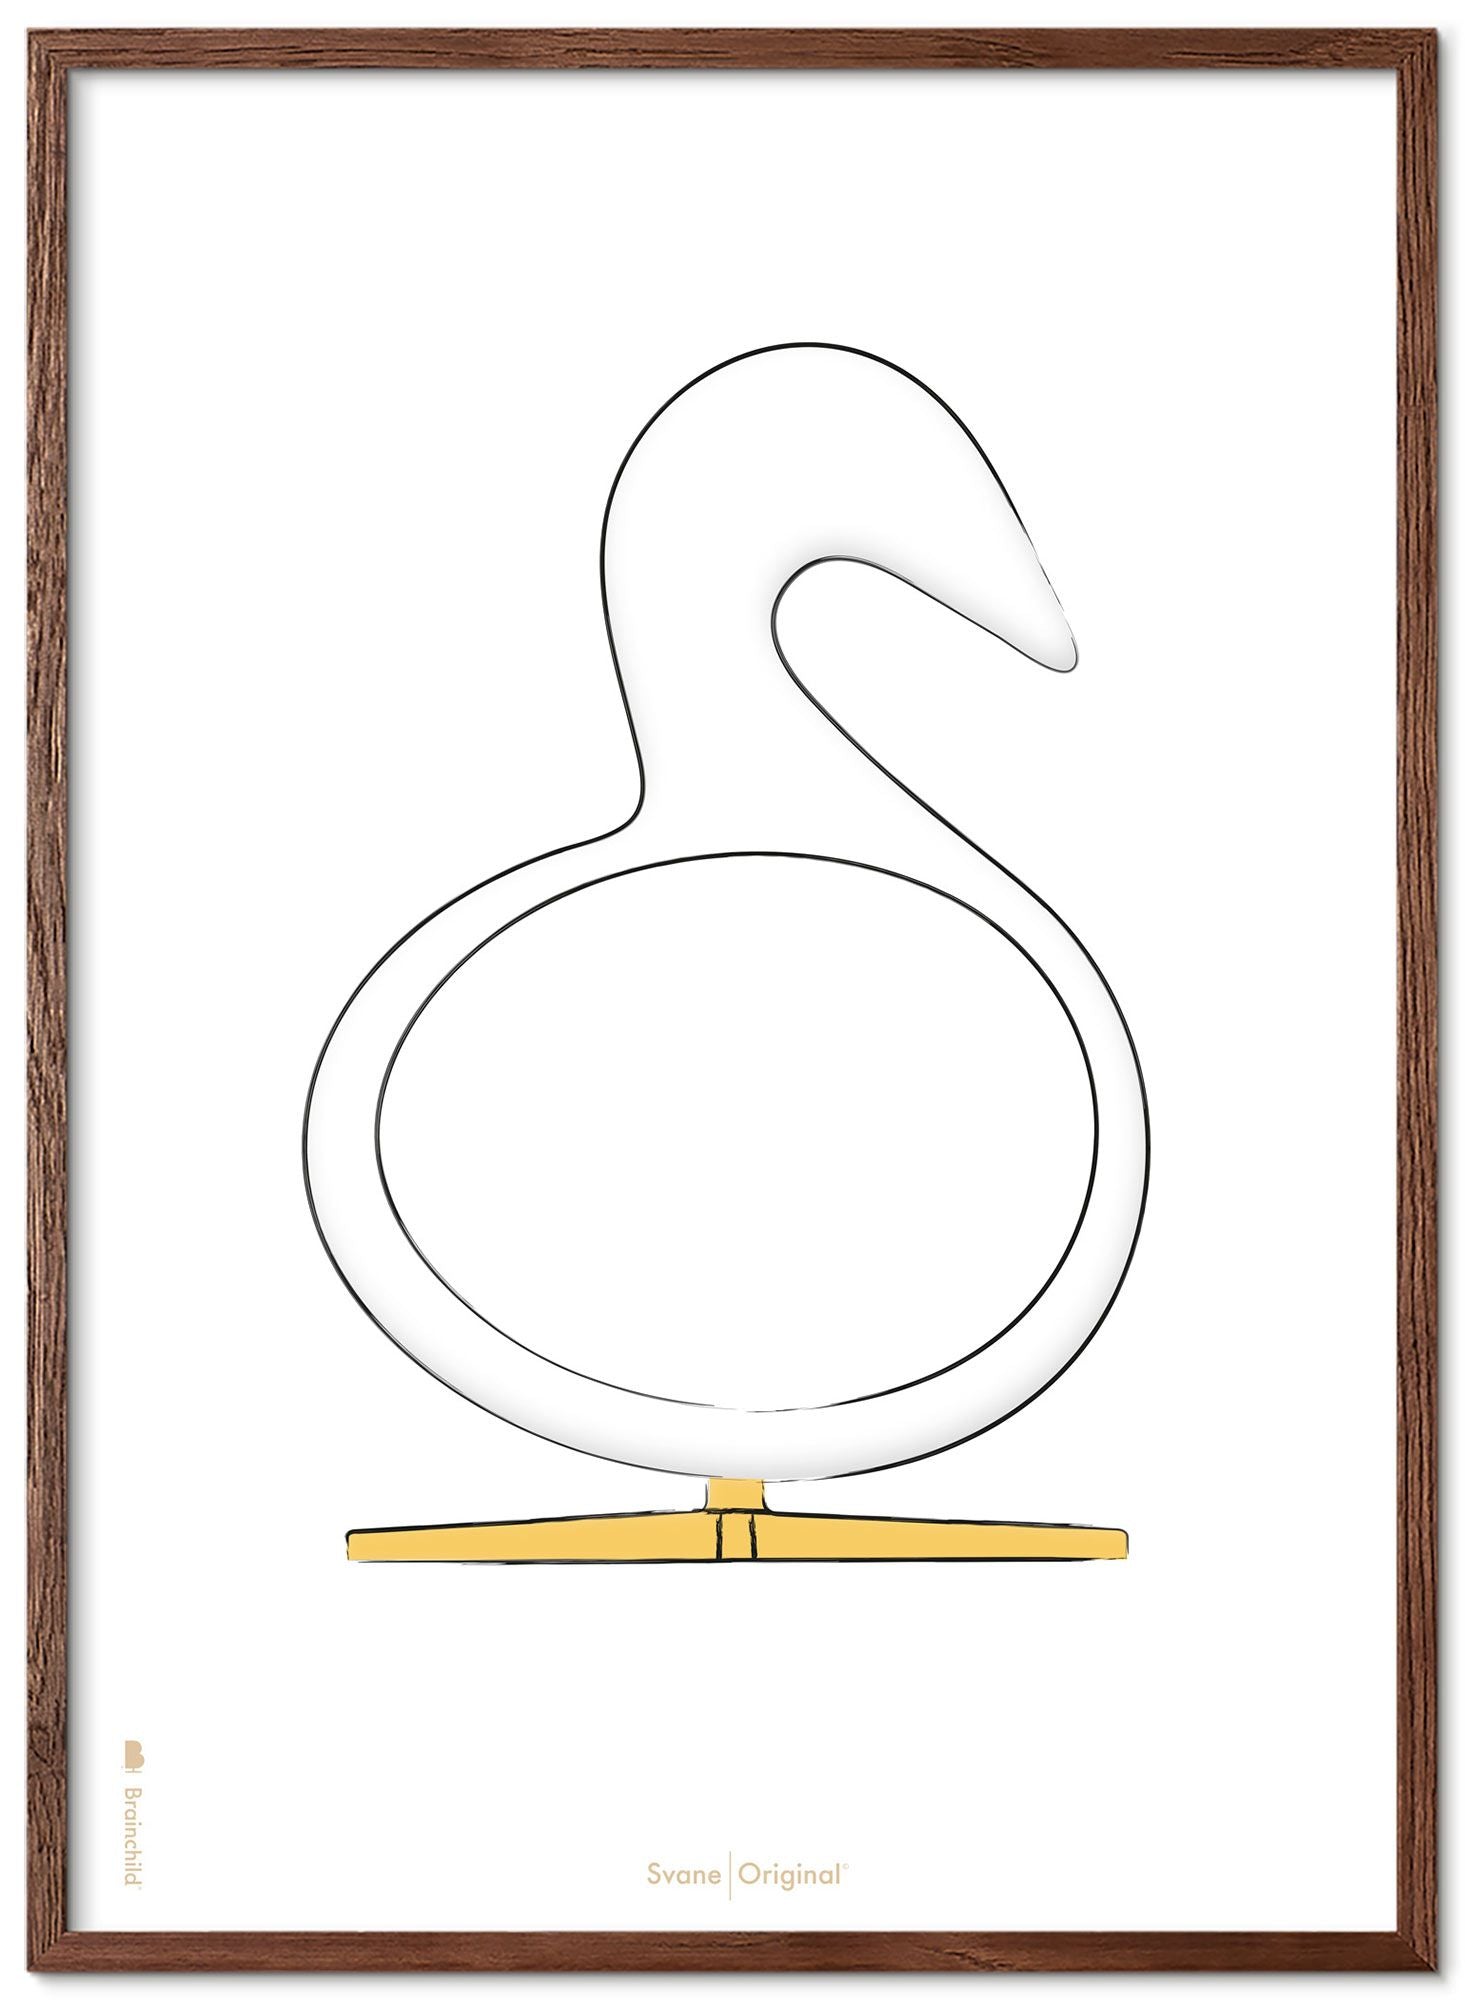 Brainchild Swan Design Sketch Poster Frame Made Of Dark Wood 50x70 Cm, White Background